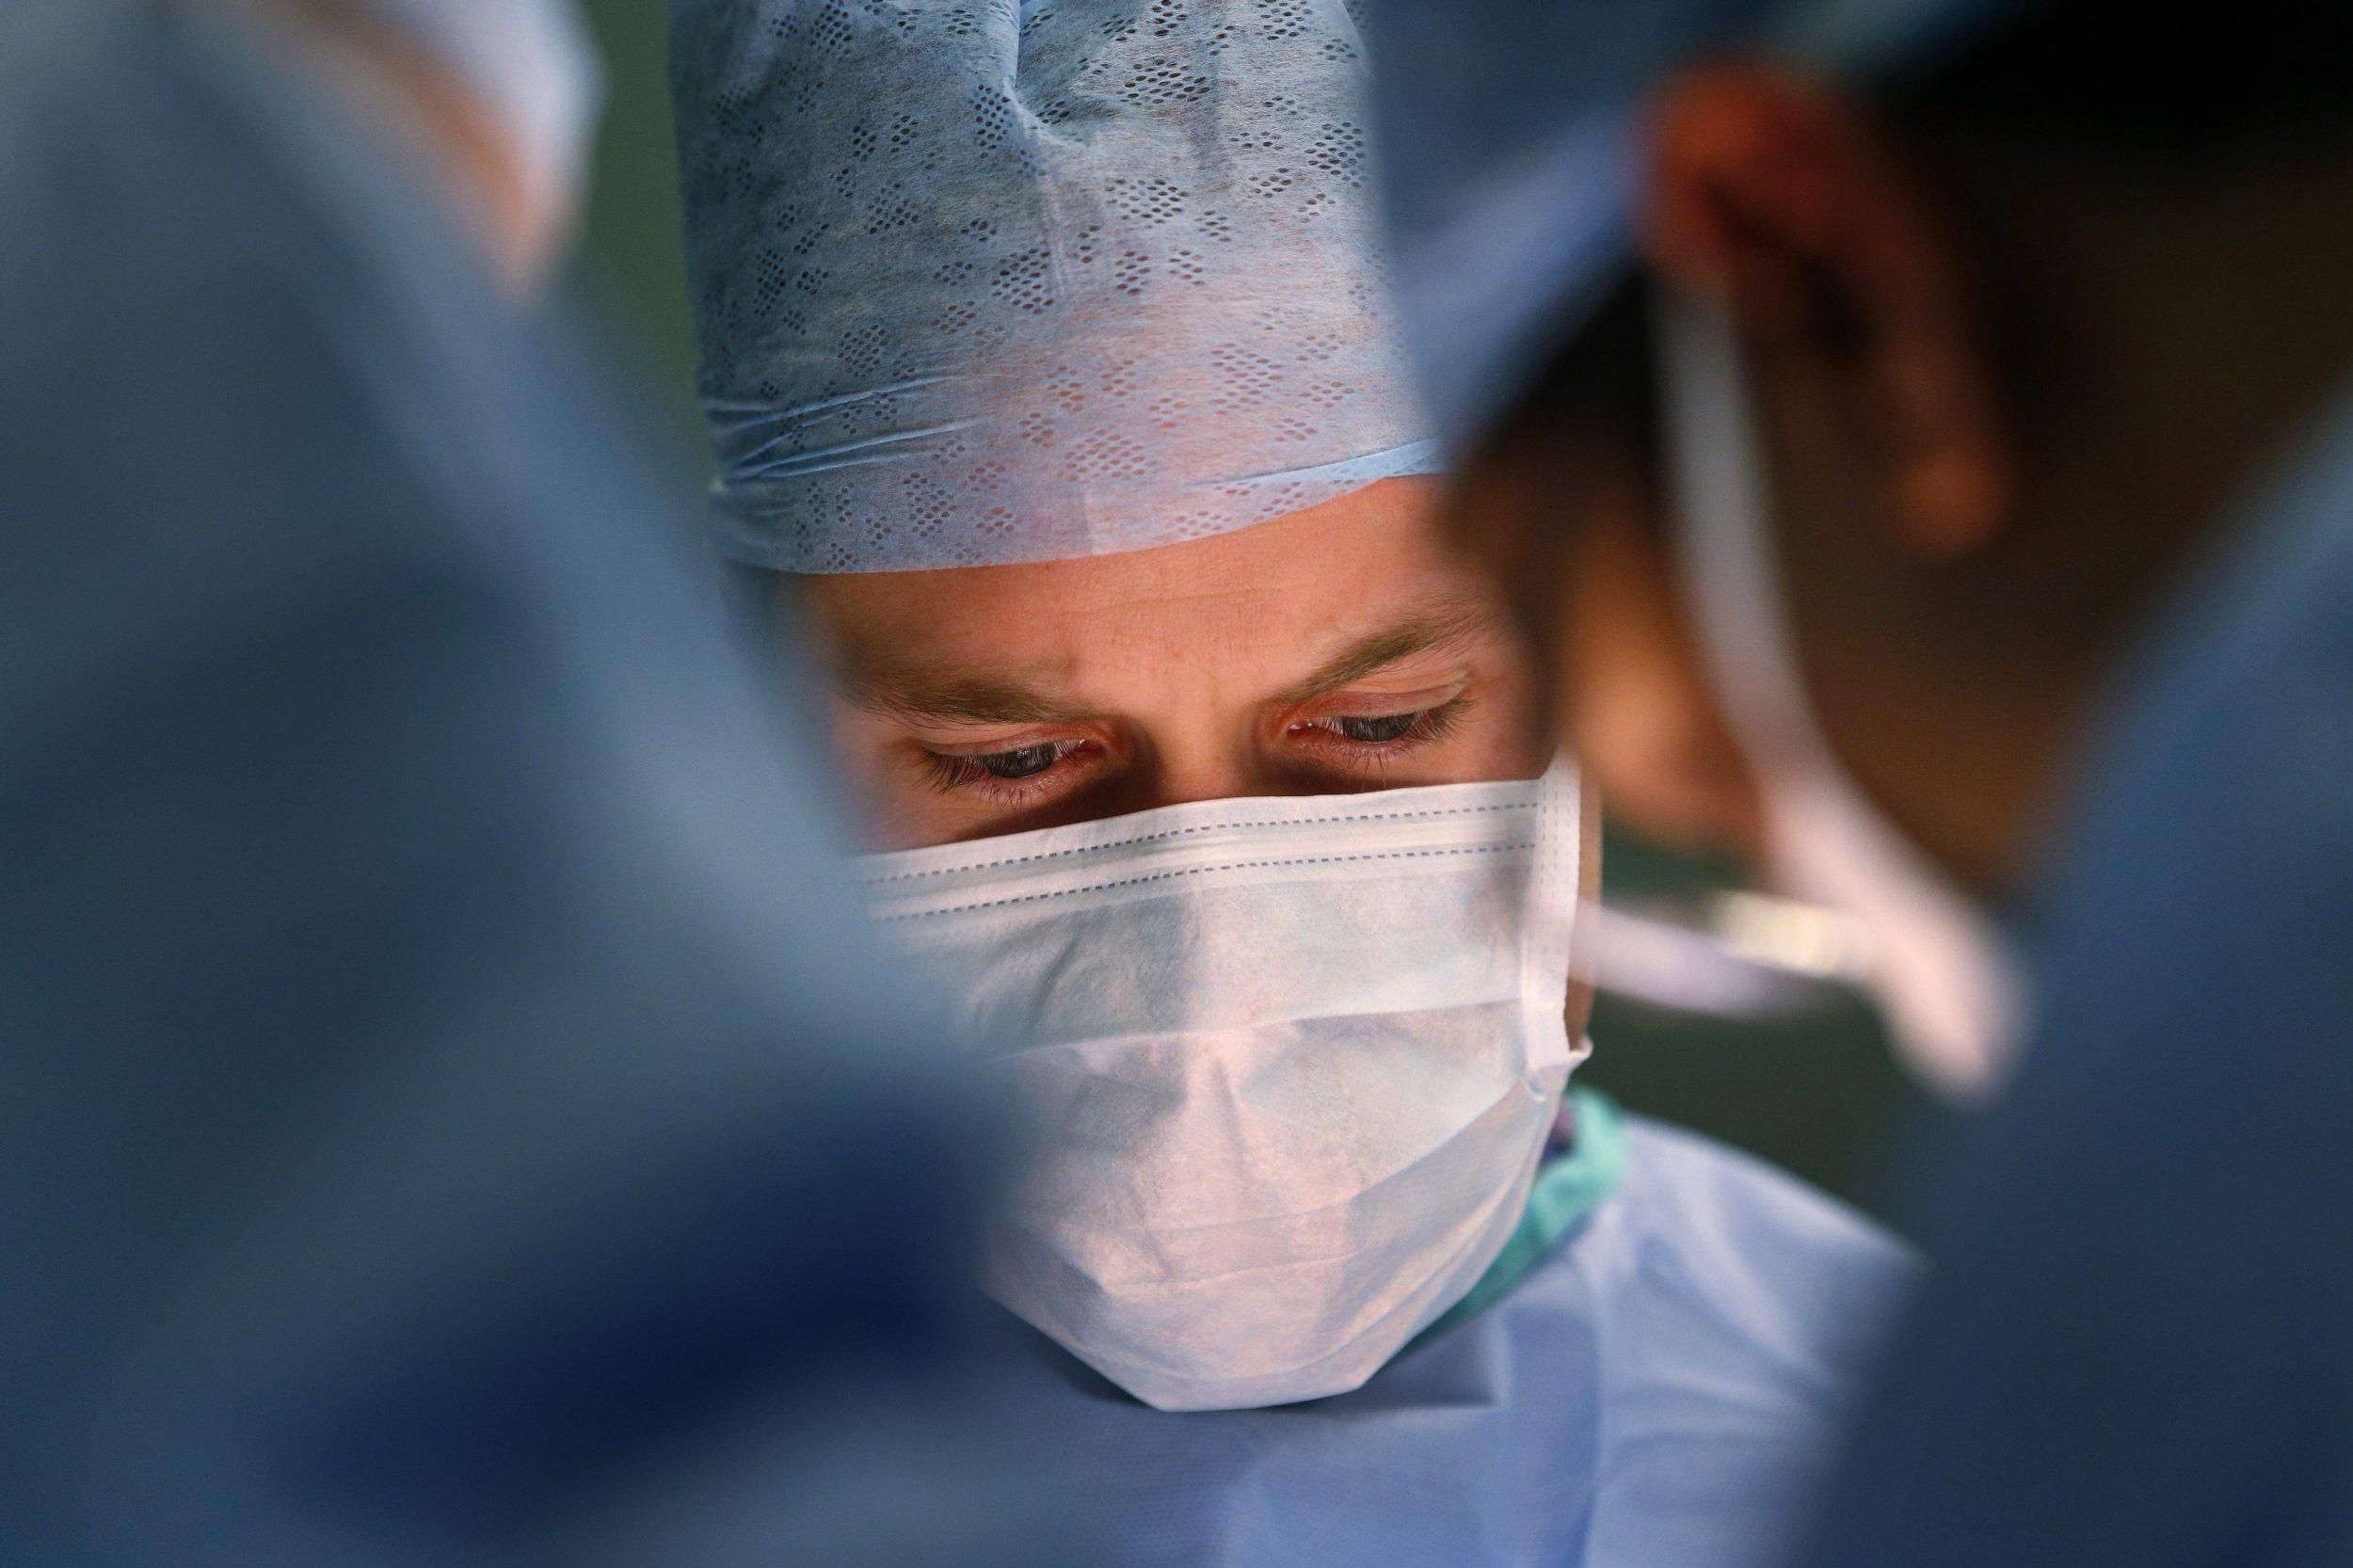 Впервые в истории Украины провели трансплантацию поджелудочной железы: фото 18+